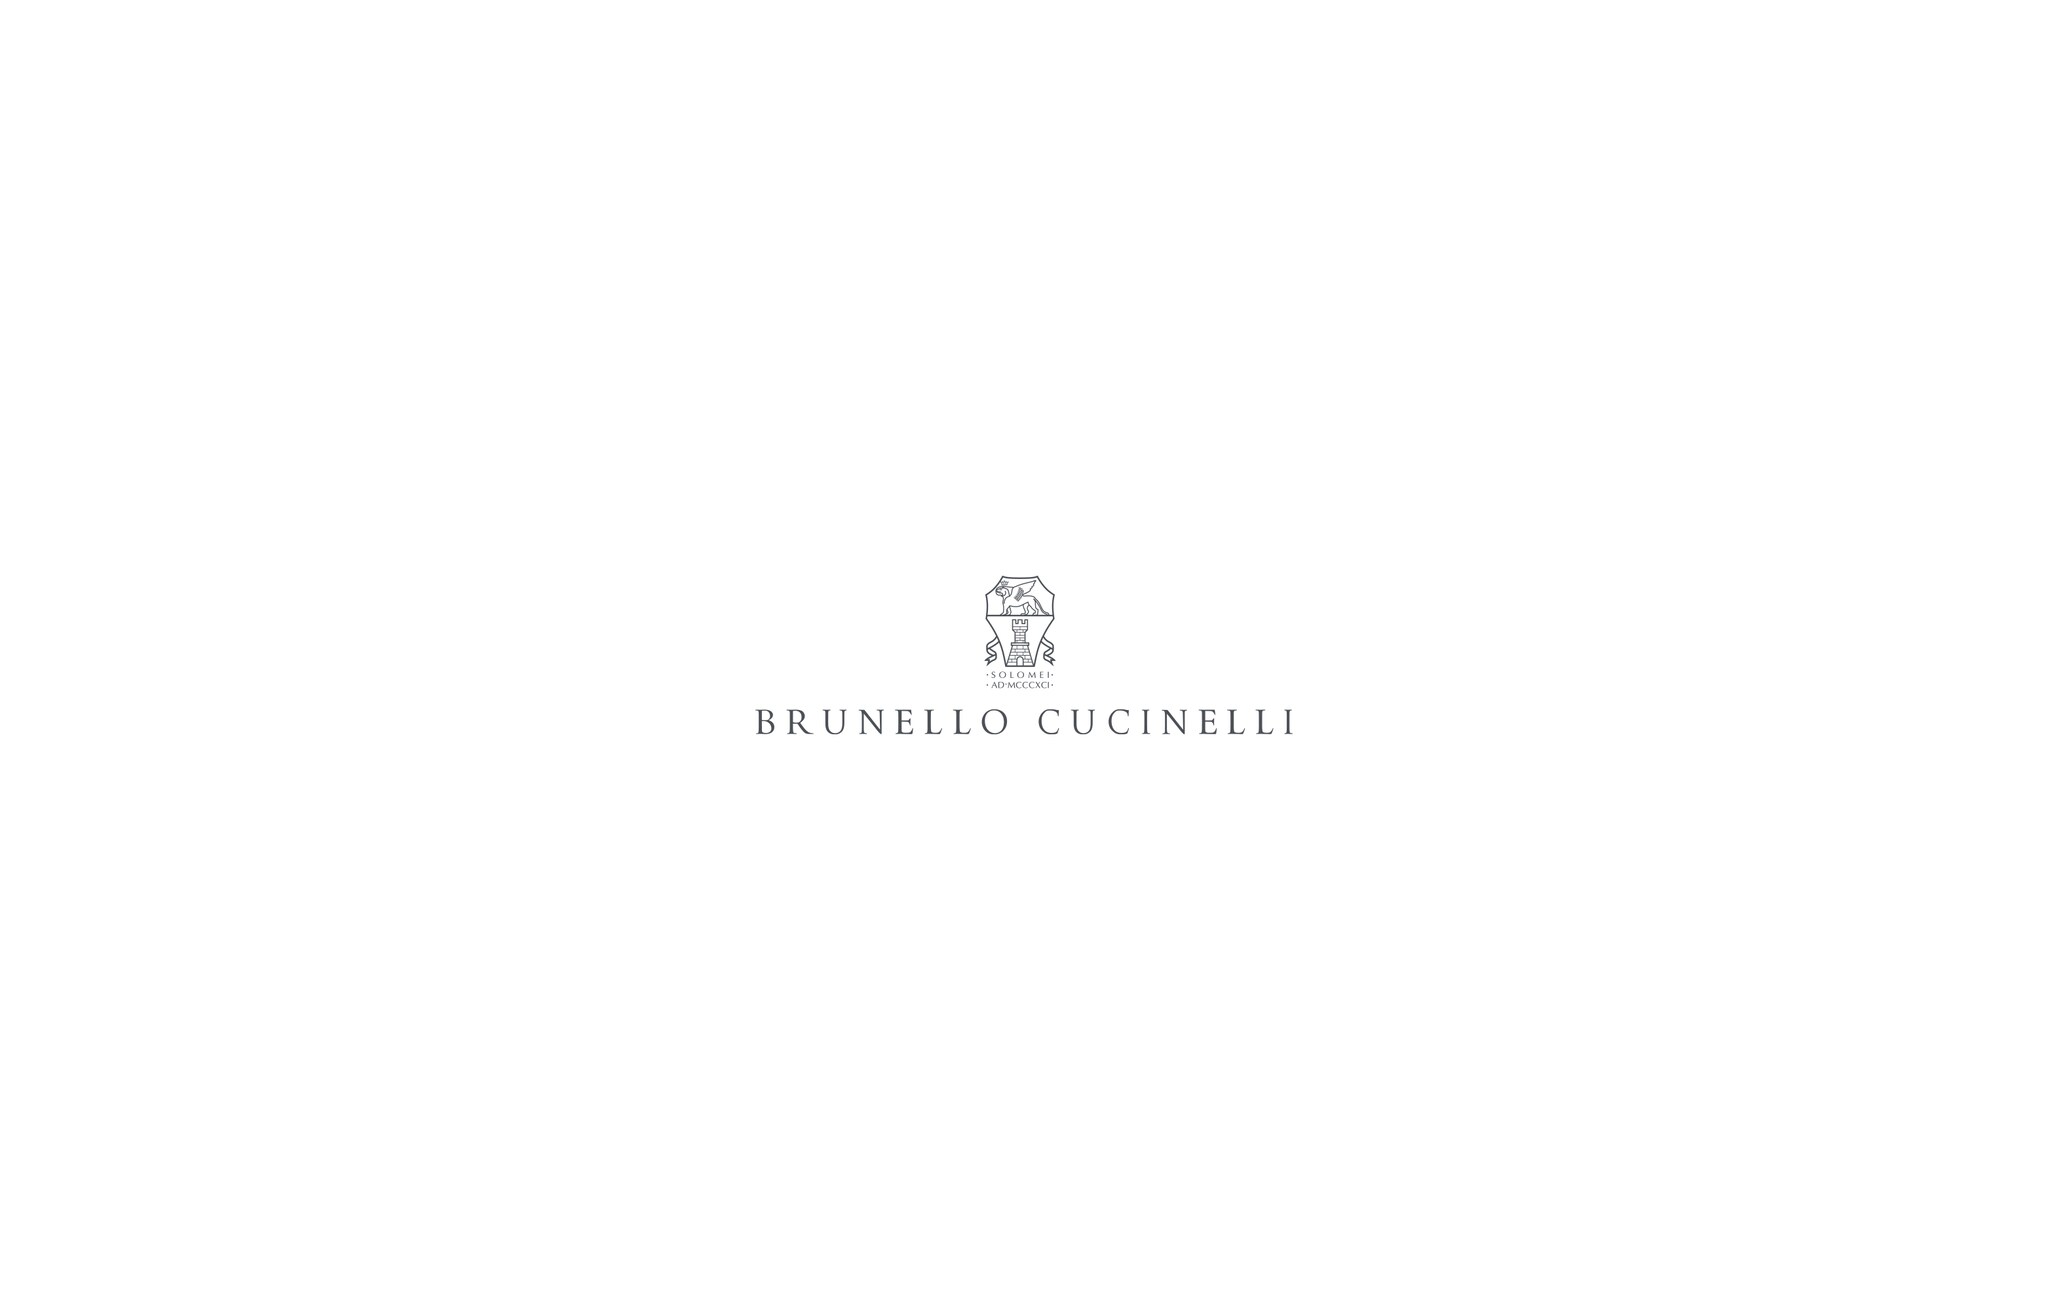  Jersey de lana, cachemir y seda Naranja Niña - Brunello Cucinelli 